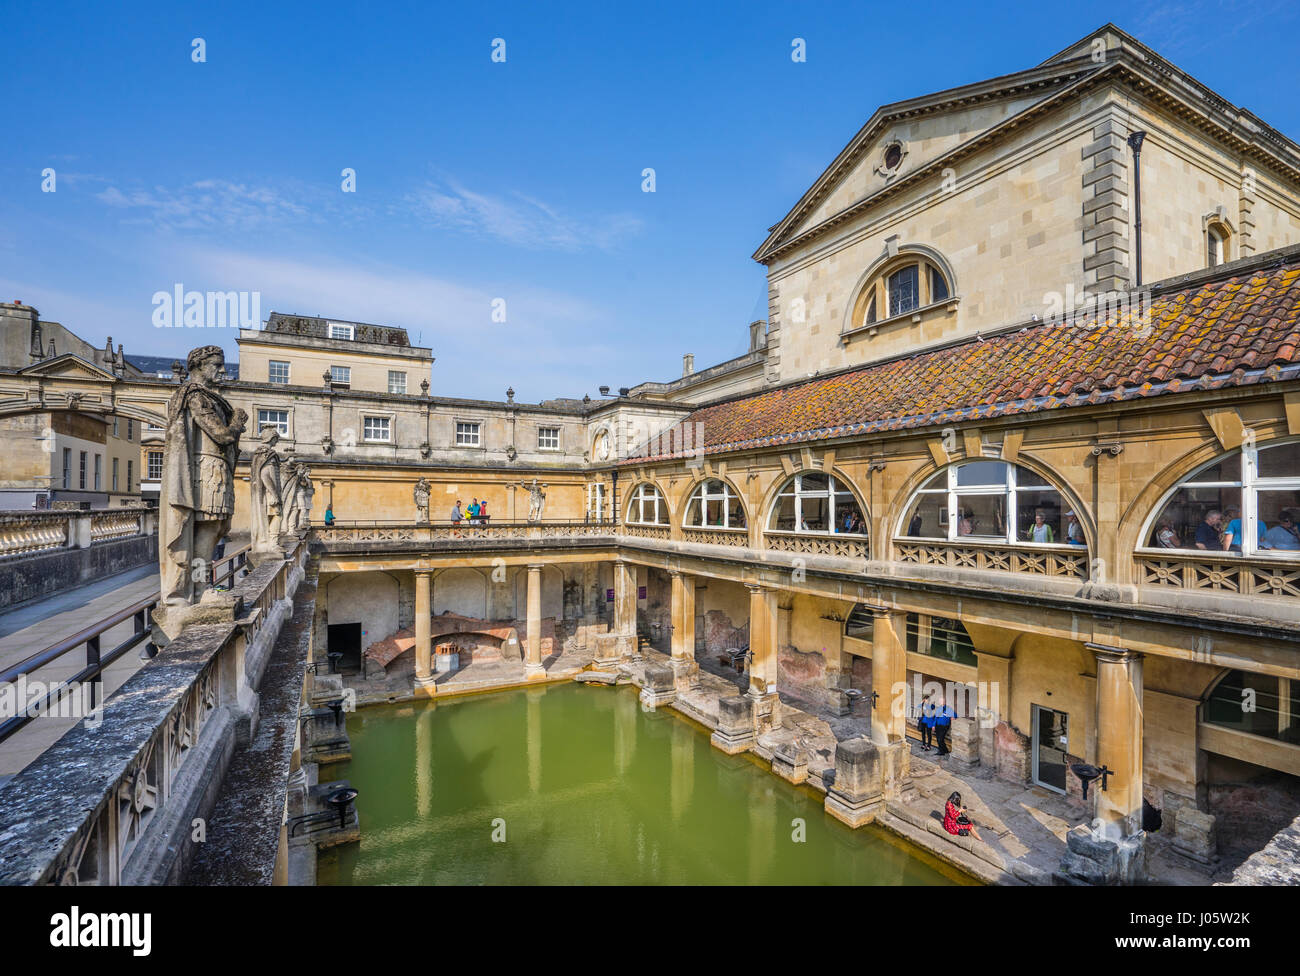 Royaume-uni, Angleterre, Somerset, les bains romains de Bath avec superstructure victorienne Banque D'Images